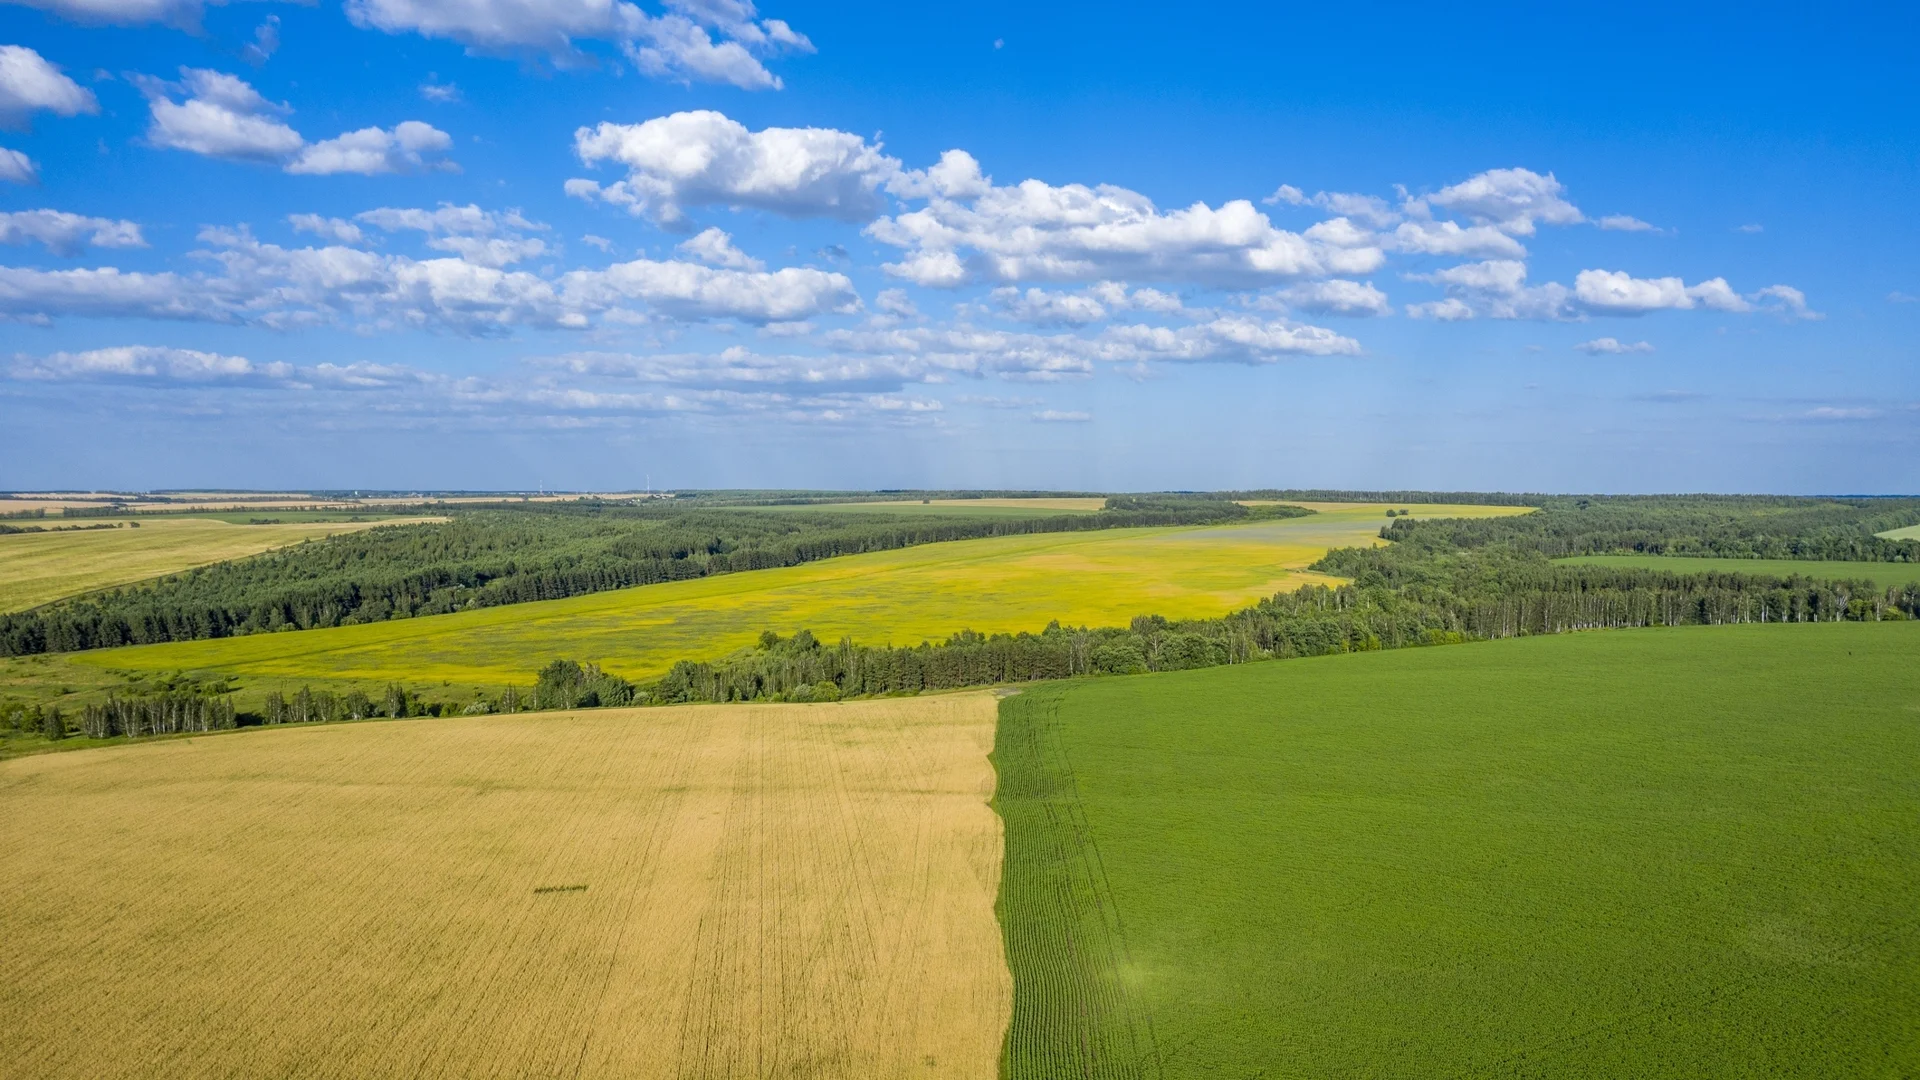 Съдът на ЕС позволи на чужденци да купуват земеделска земя в България